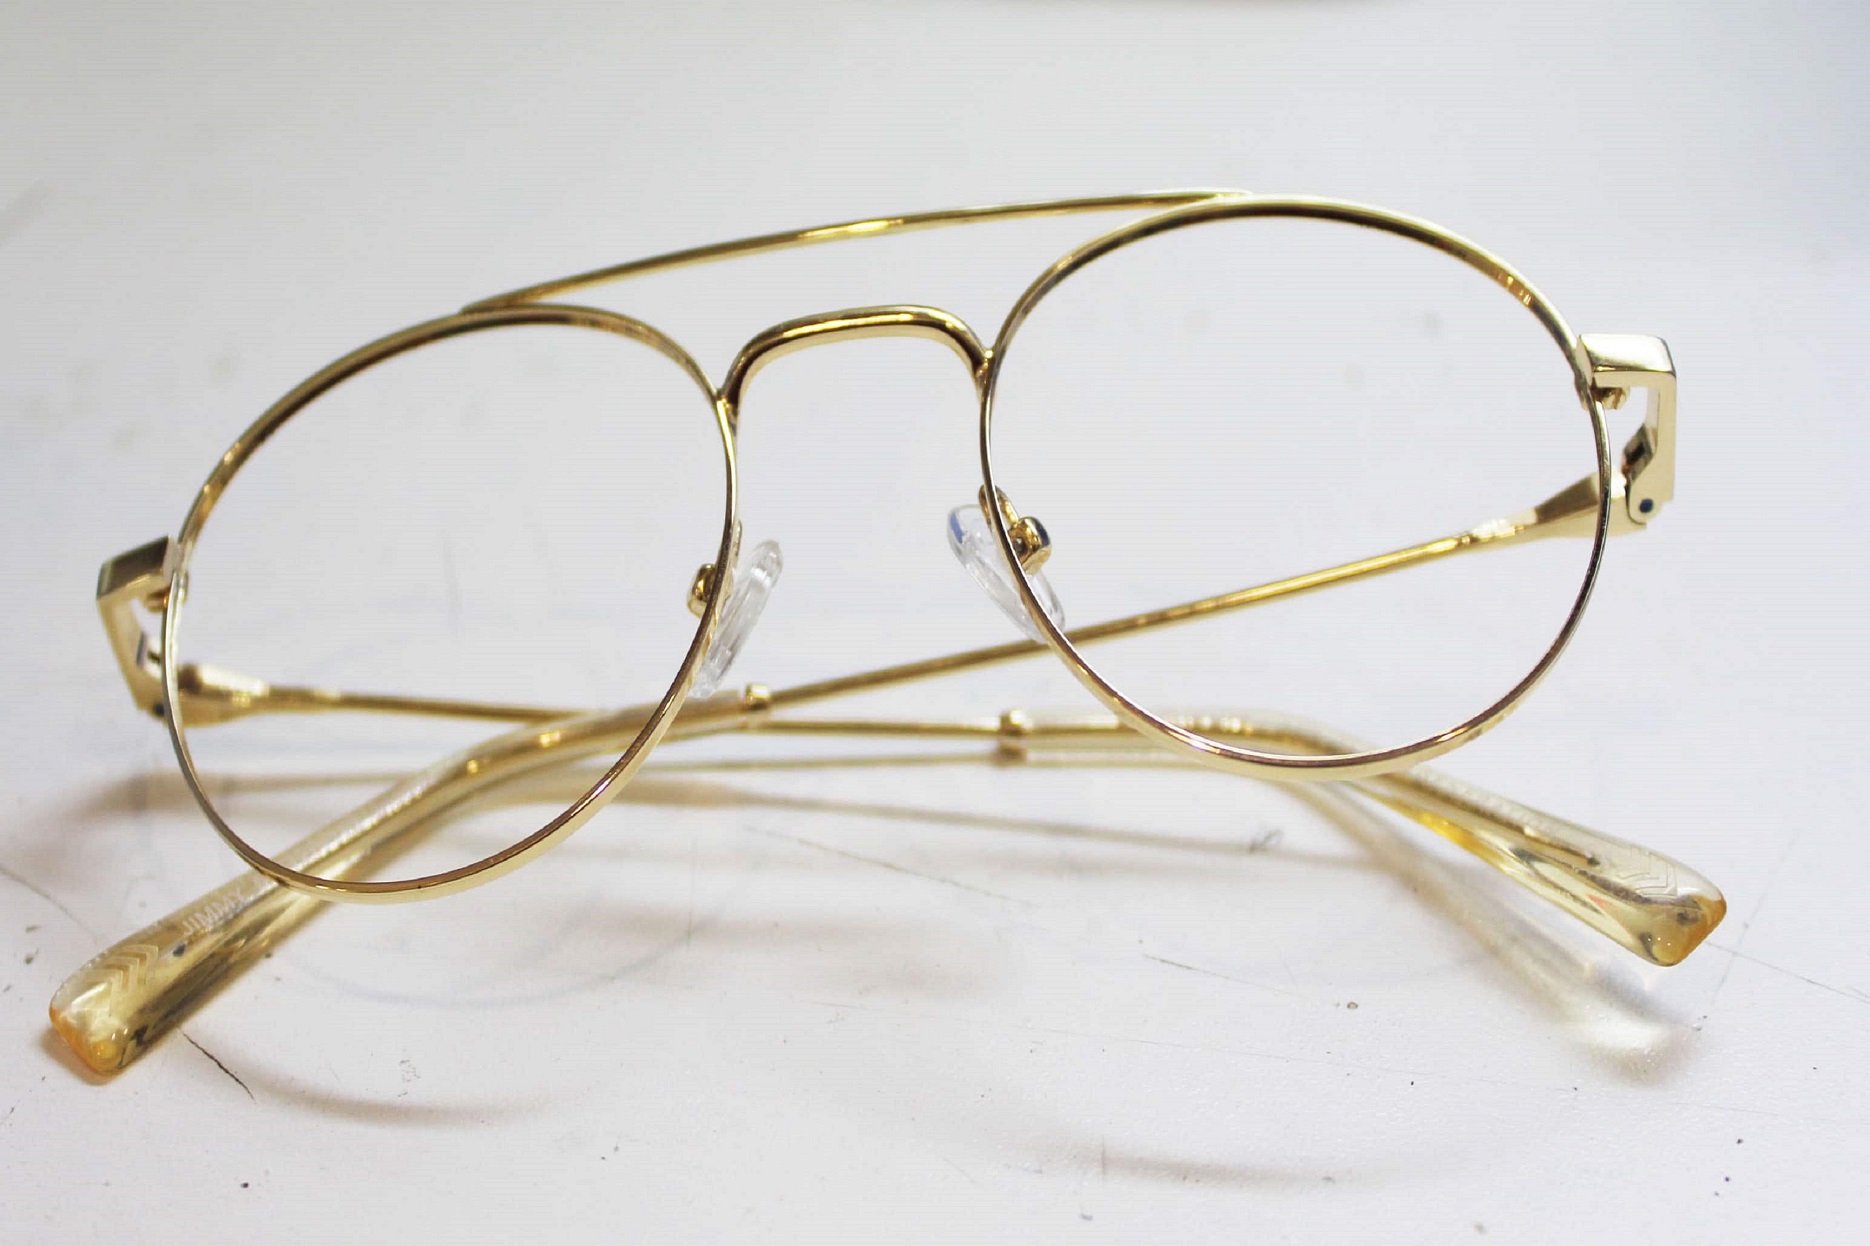 Glasses for repair